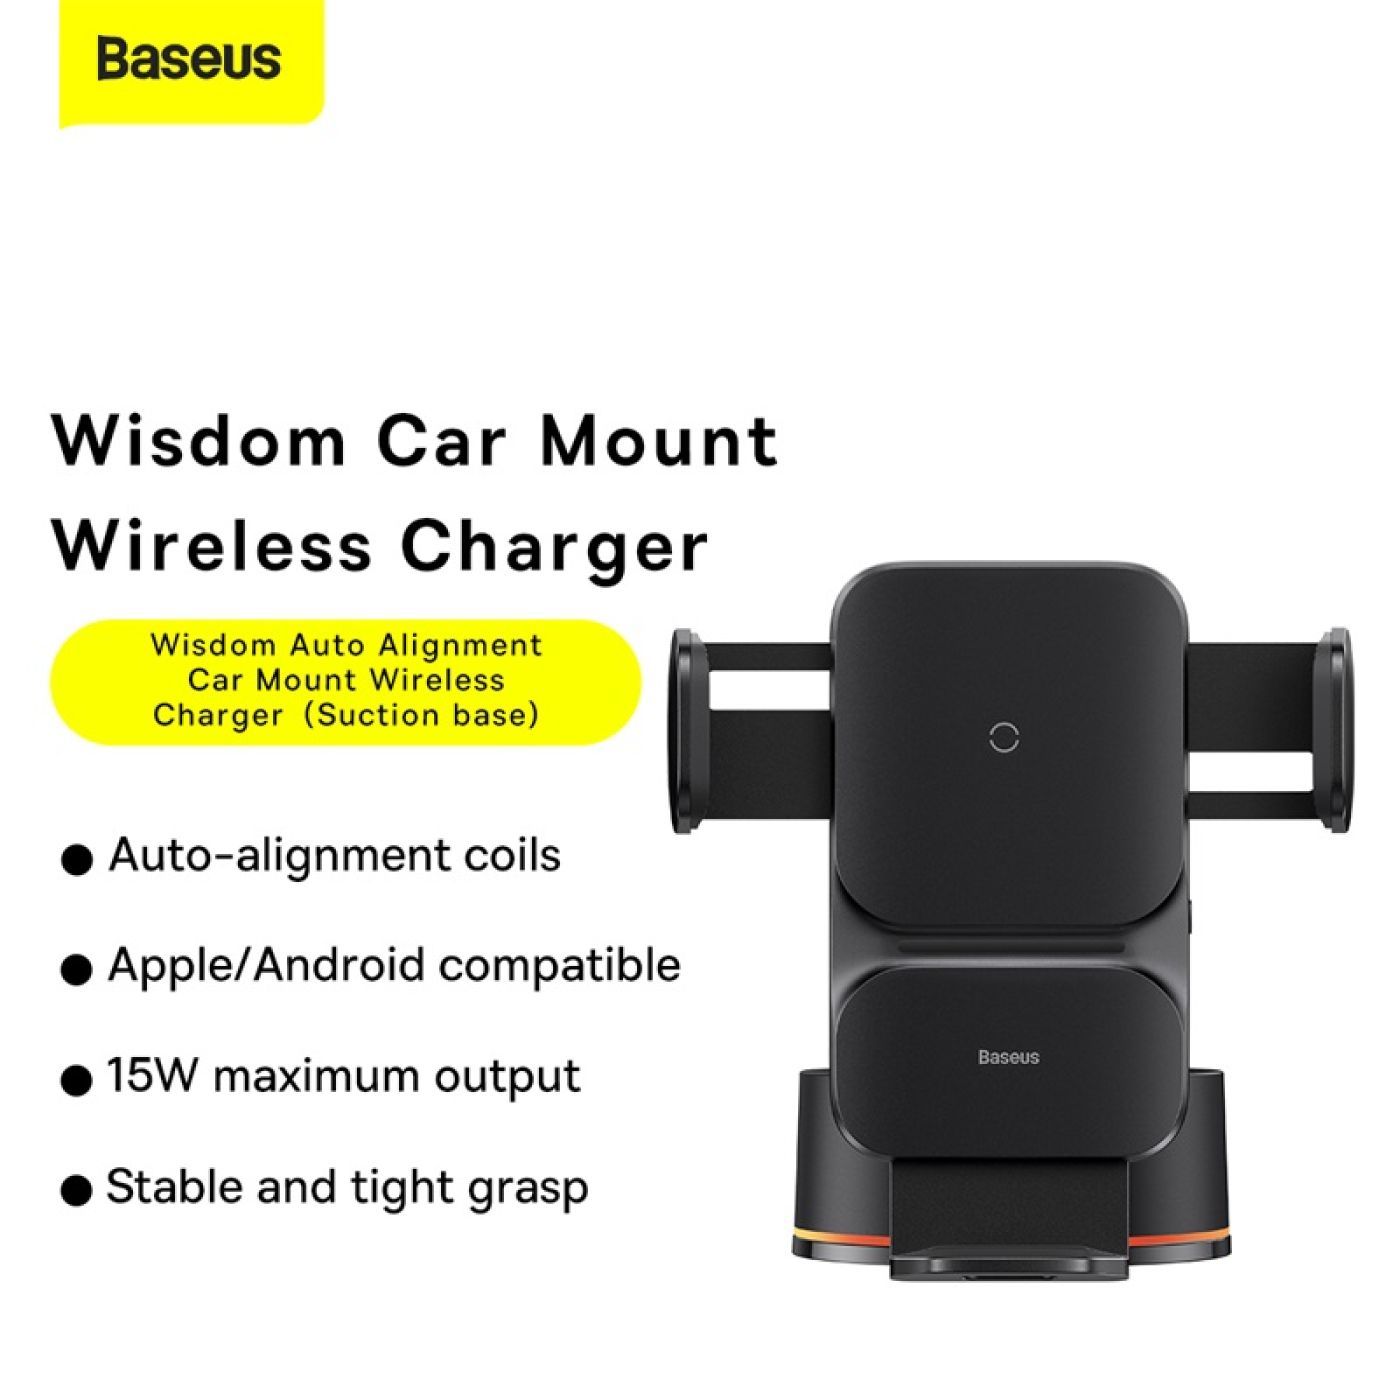 Bộ Đế Giữ Điện Thoại Tích Hợp Sạc Không Dây Baseus Wisdom Auto Alignment Car Mount Wireless Charger